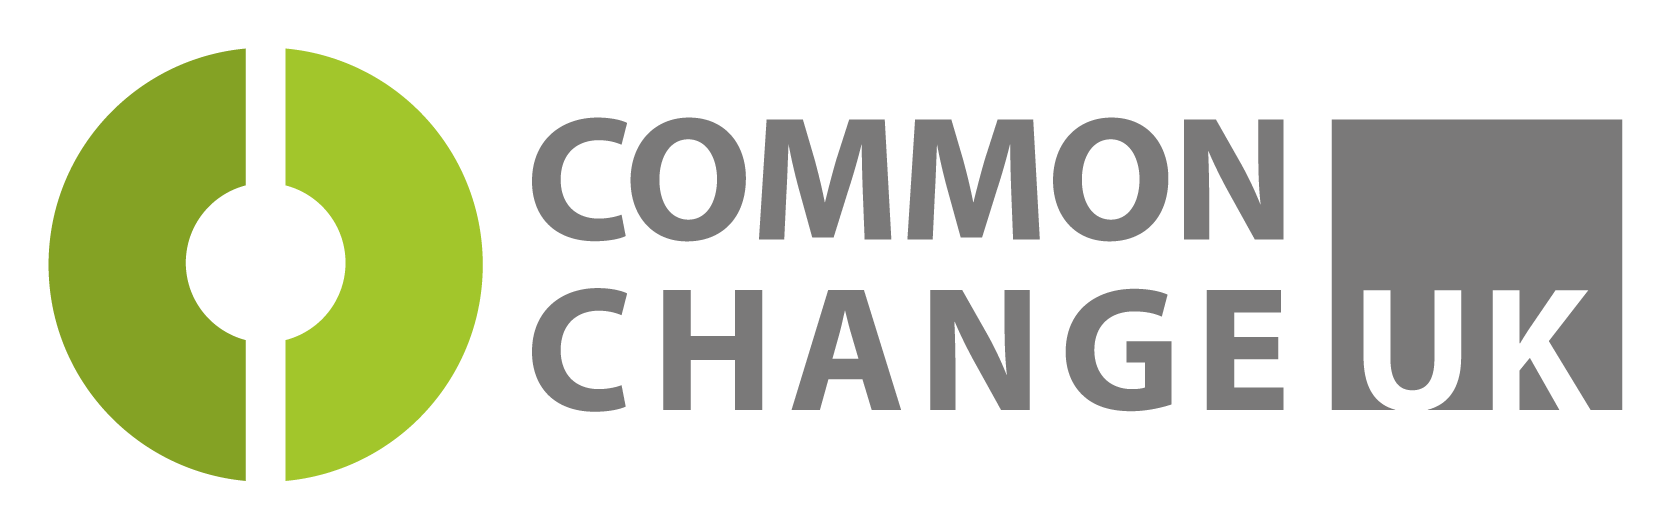 Common Change UK logo